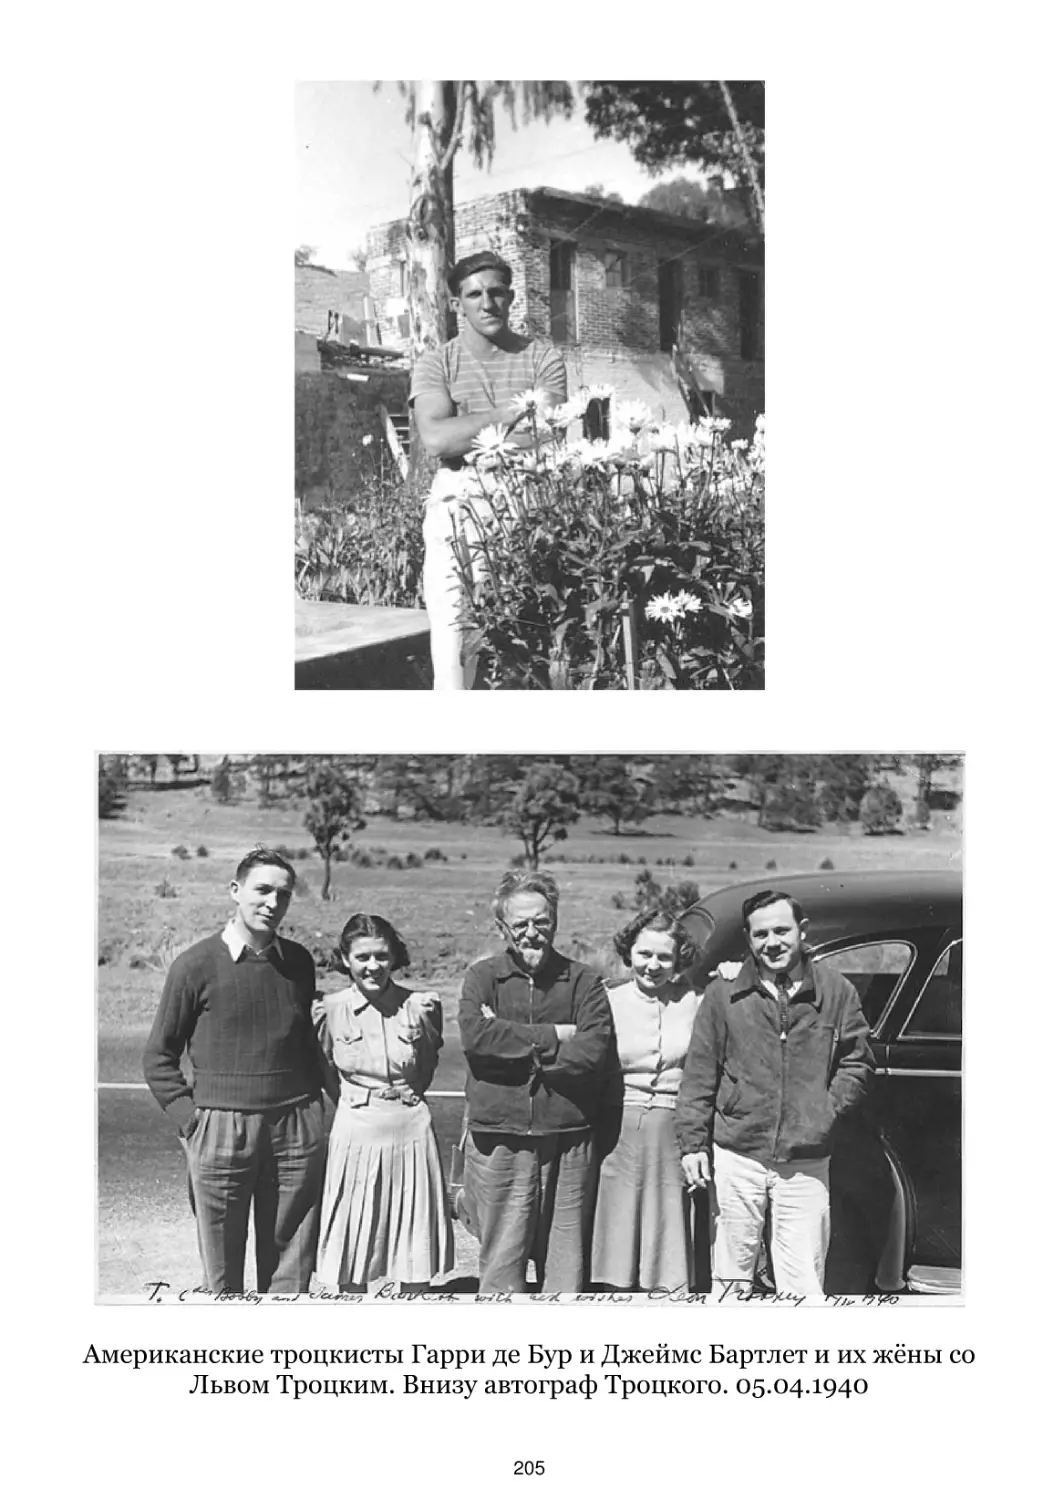 Американские троцкисты Гарри де Бур и Джеймс Бартлет и их жёны со Львом Троцким. 05.04.1940